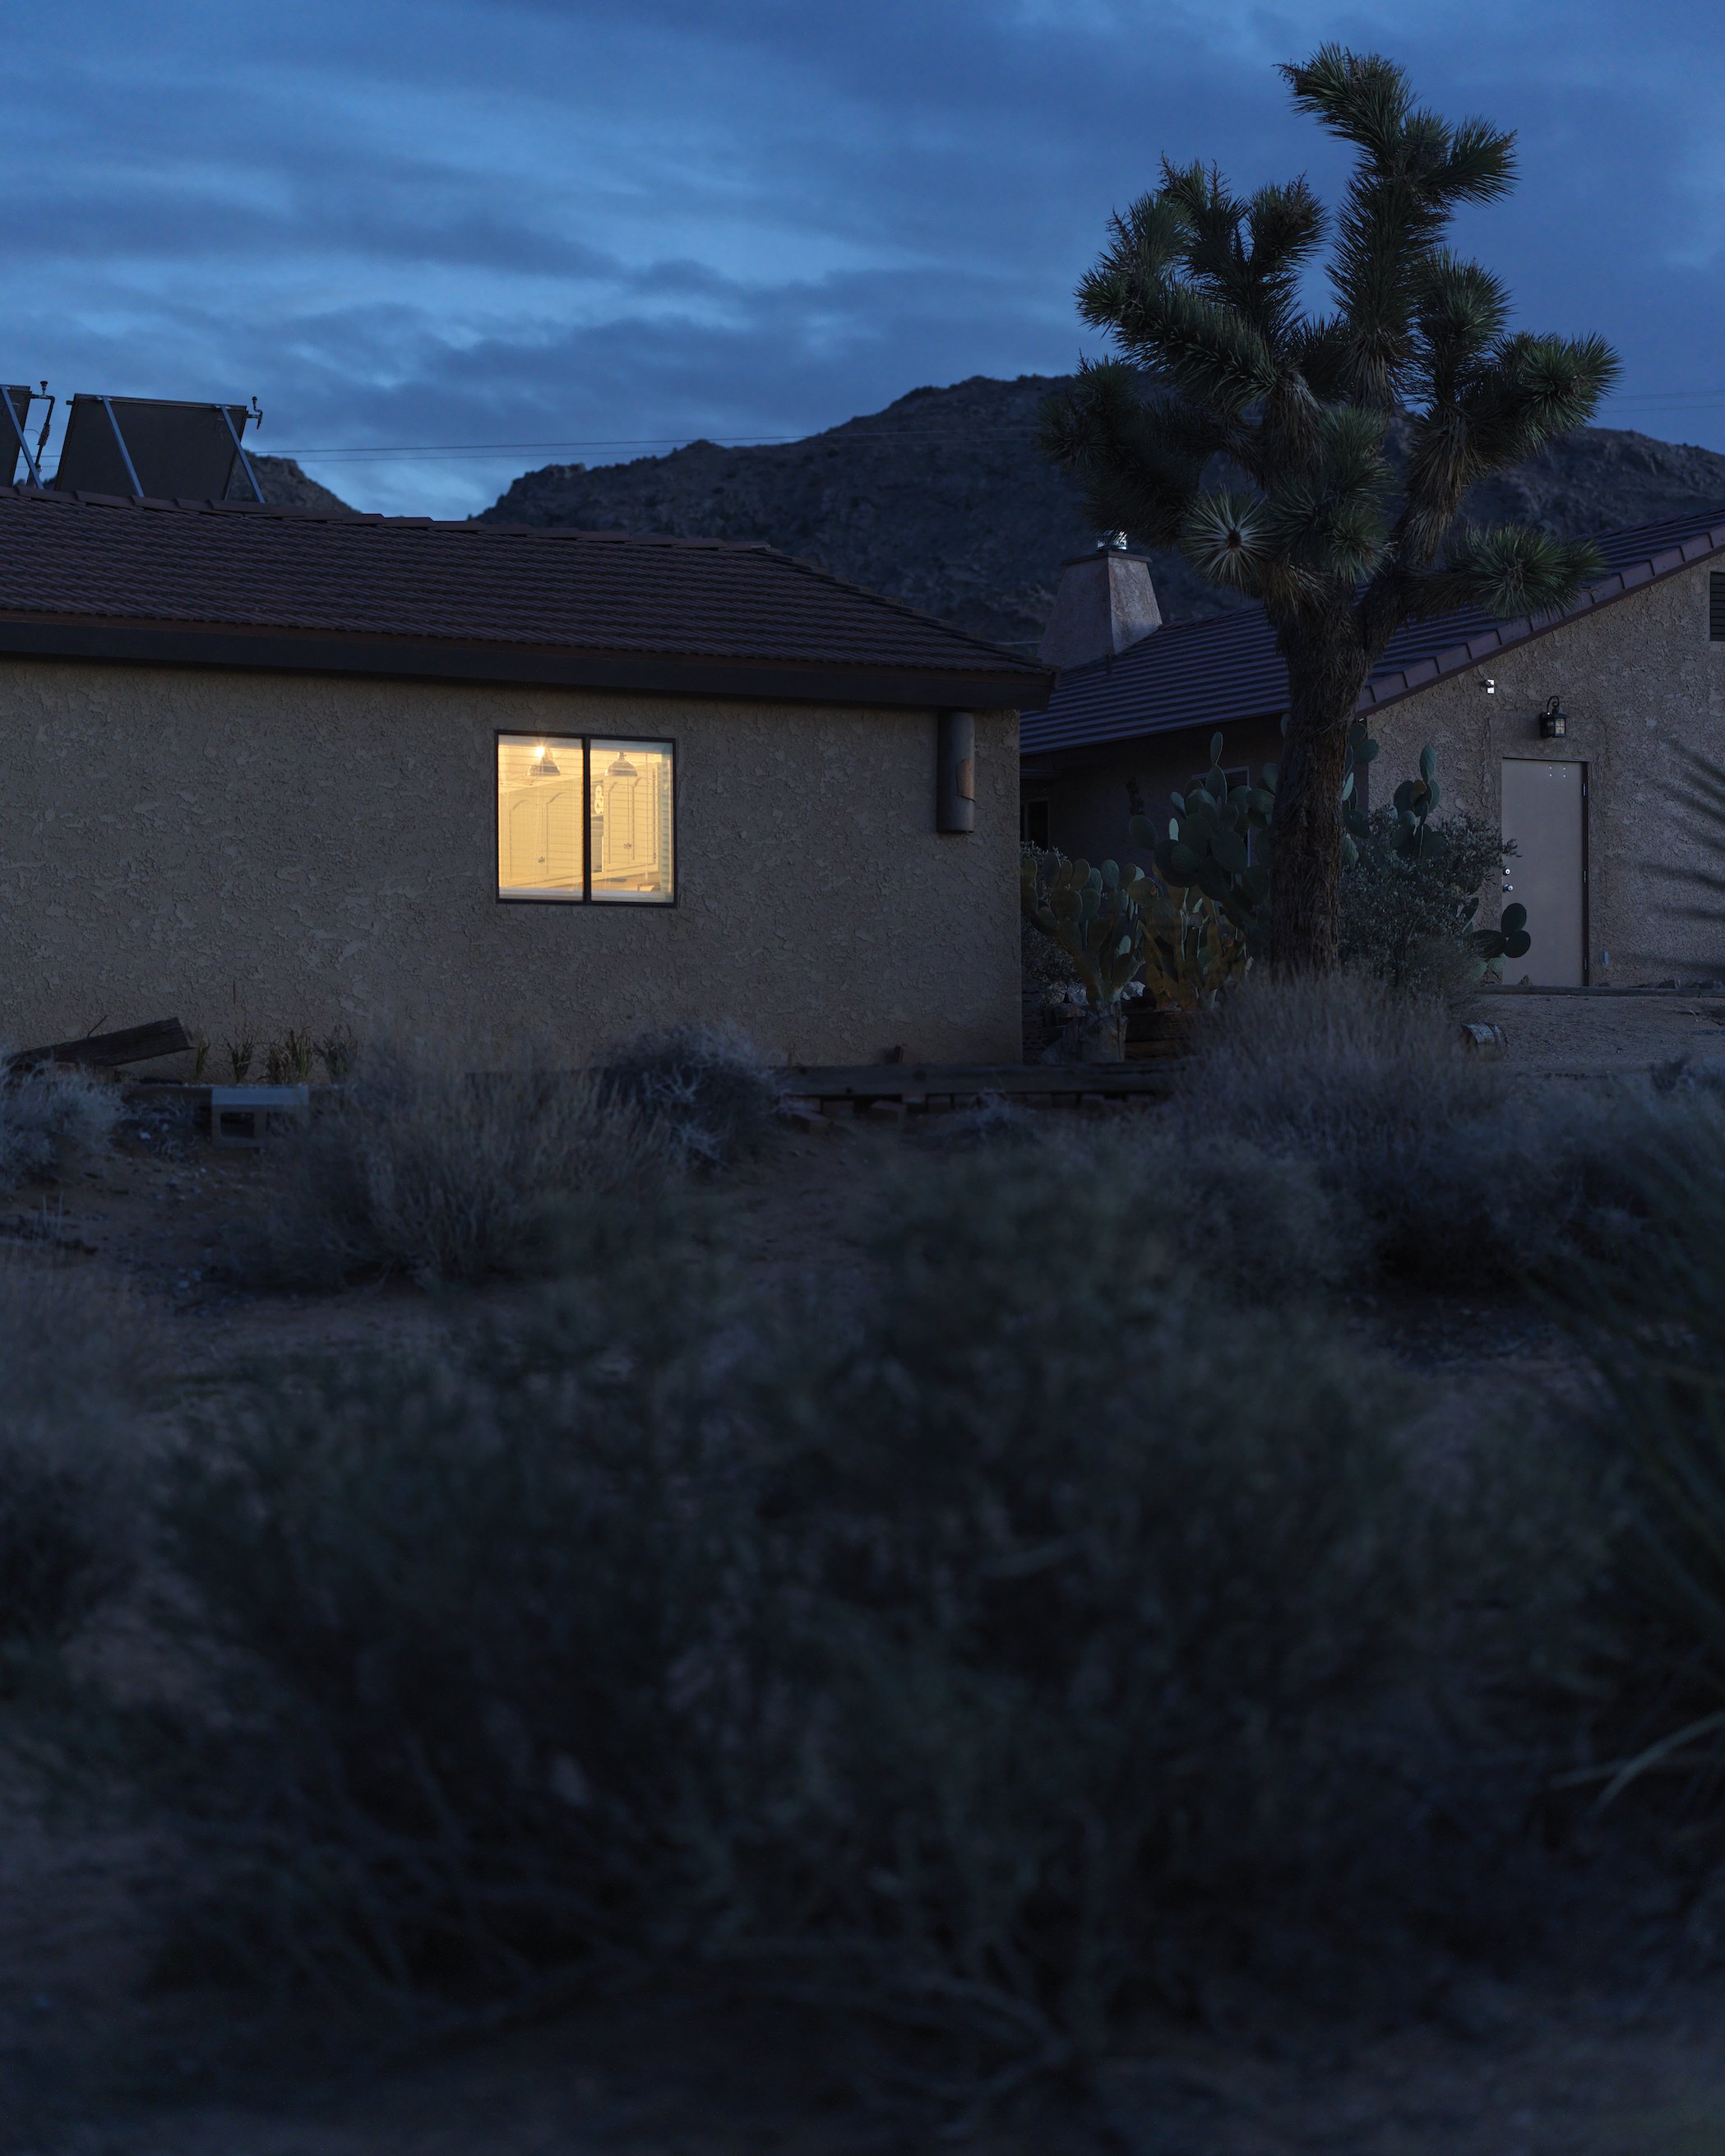 A House with a Light Left on at Dusk.jpg